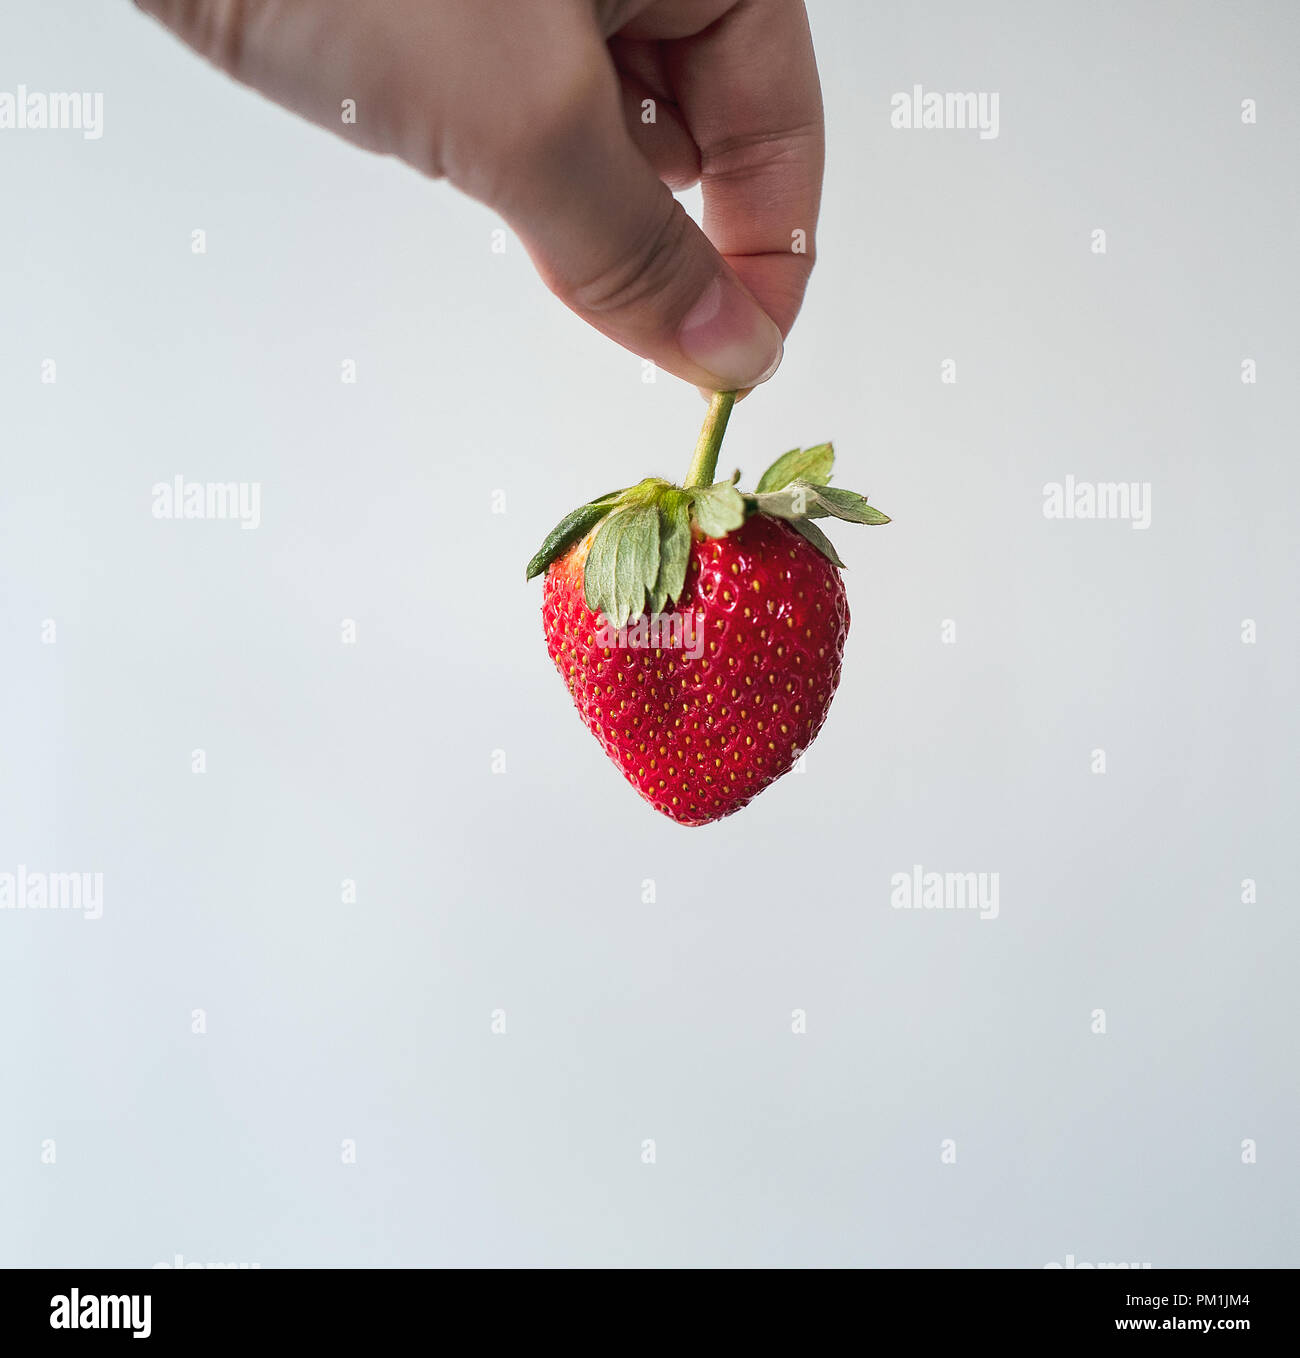 Kommissionierung frische rote Erdbeere mit Finger Stockfoto